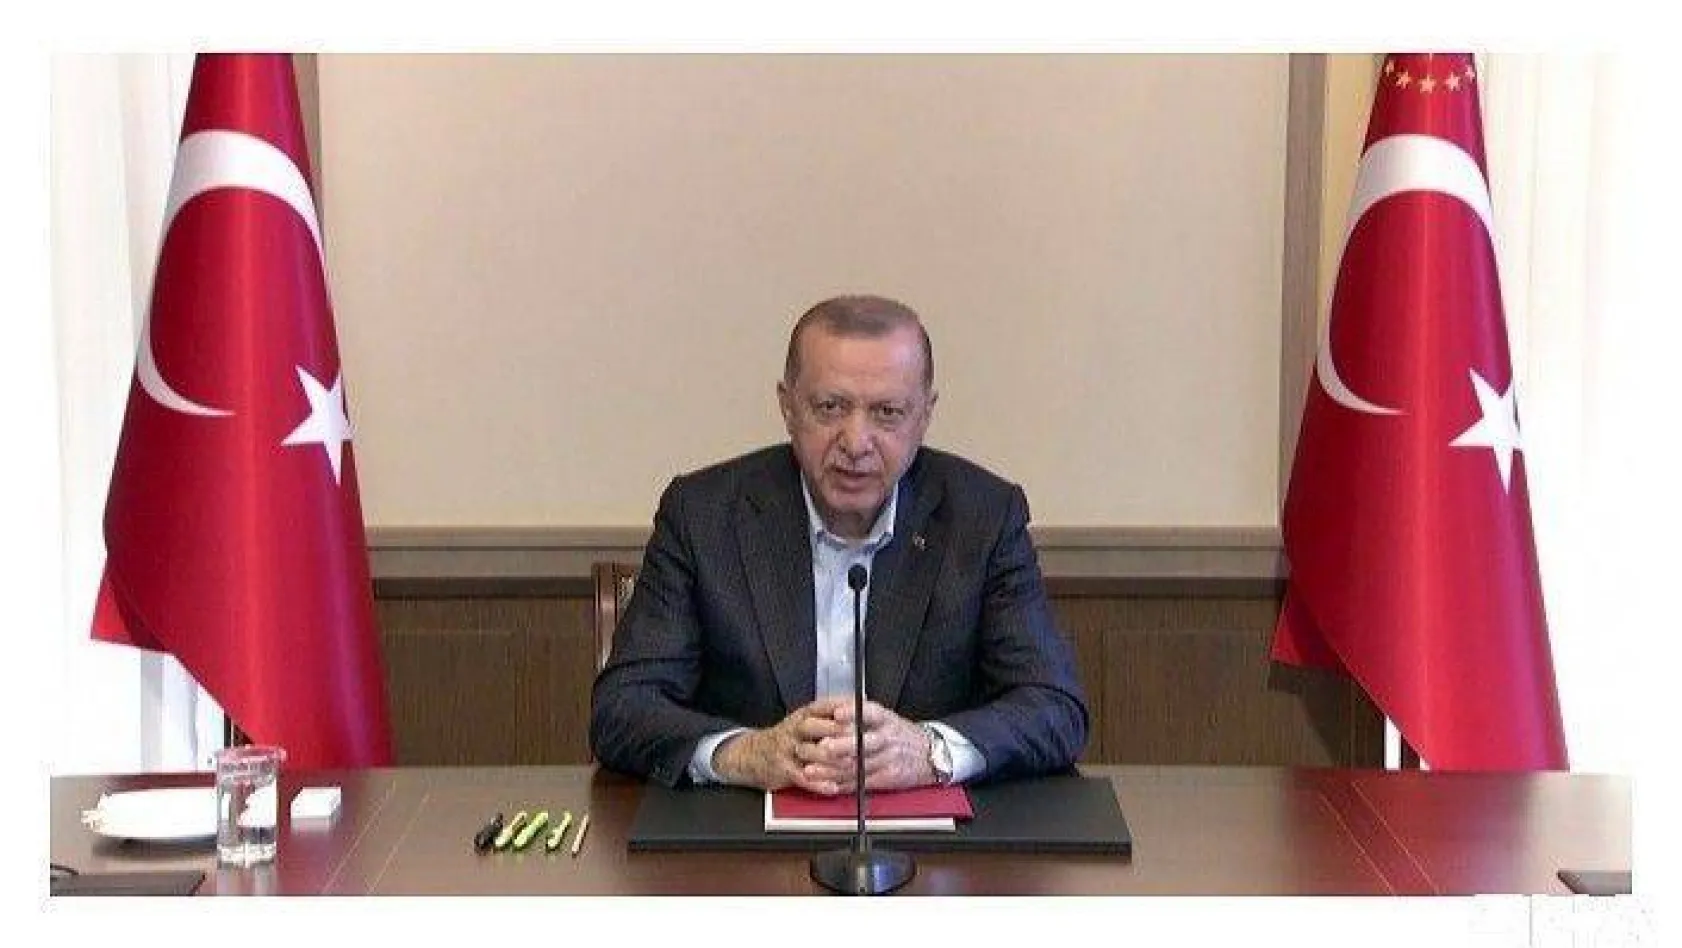 Cumhurbaşkanı Erdoğan'dan normalleşme takvimine ilişkin açıklama